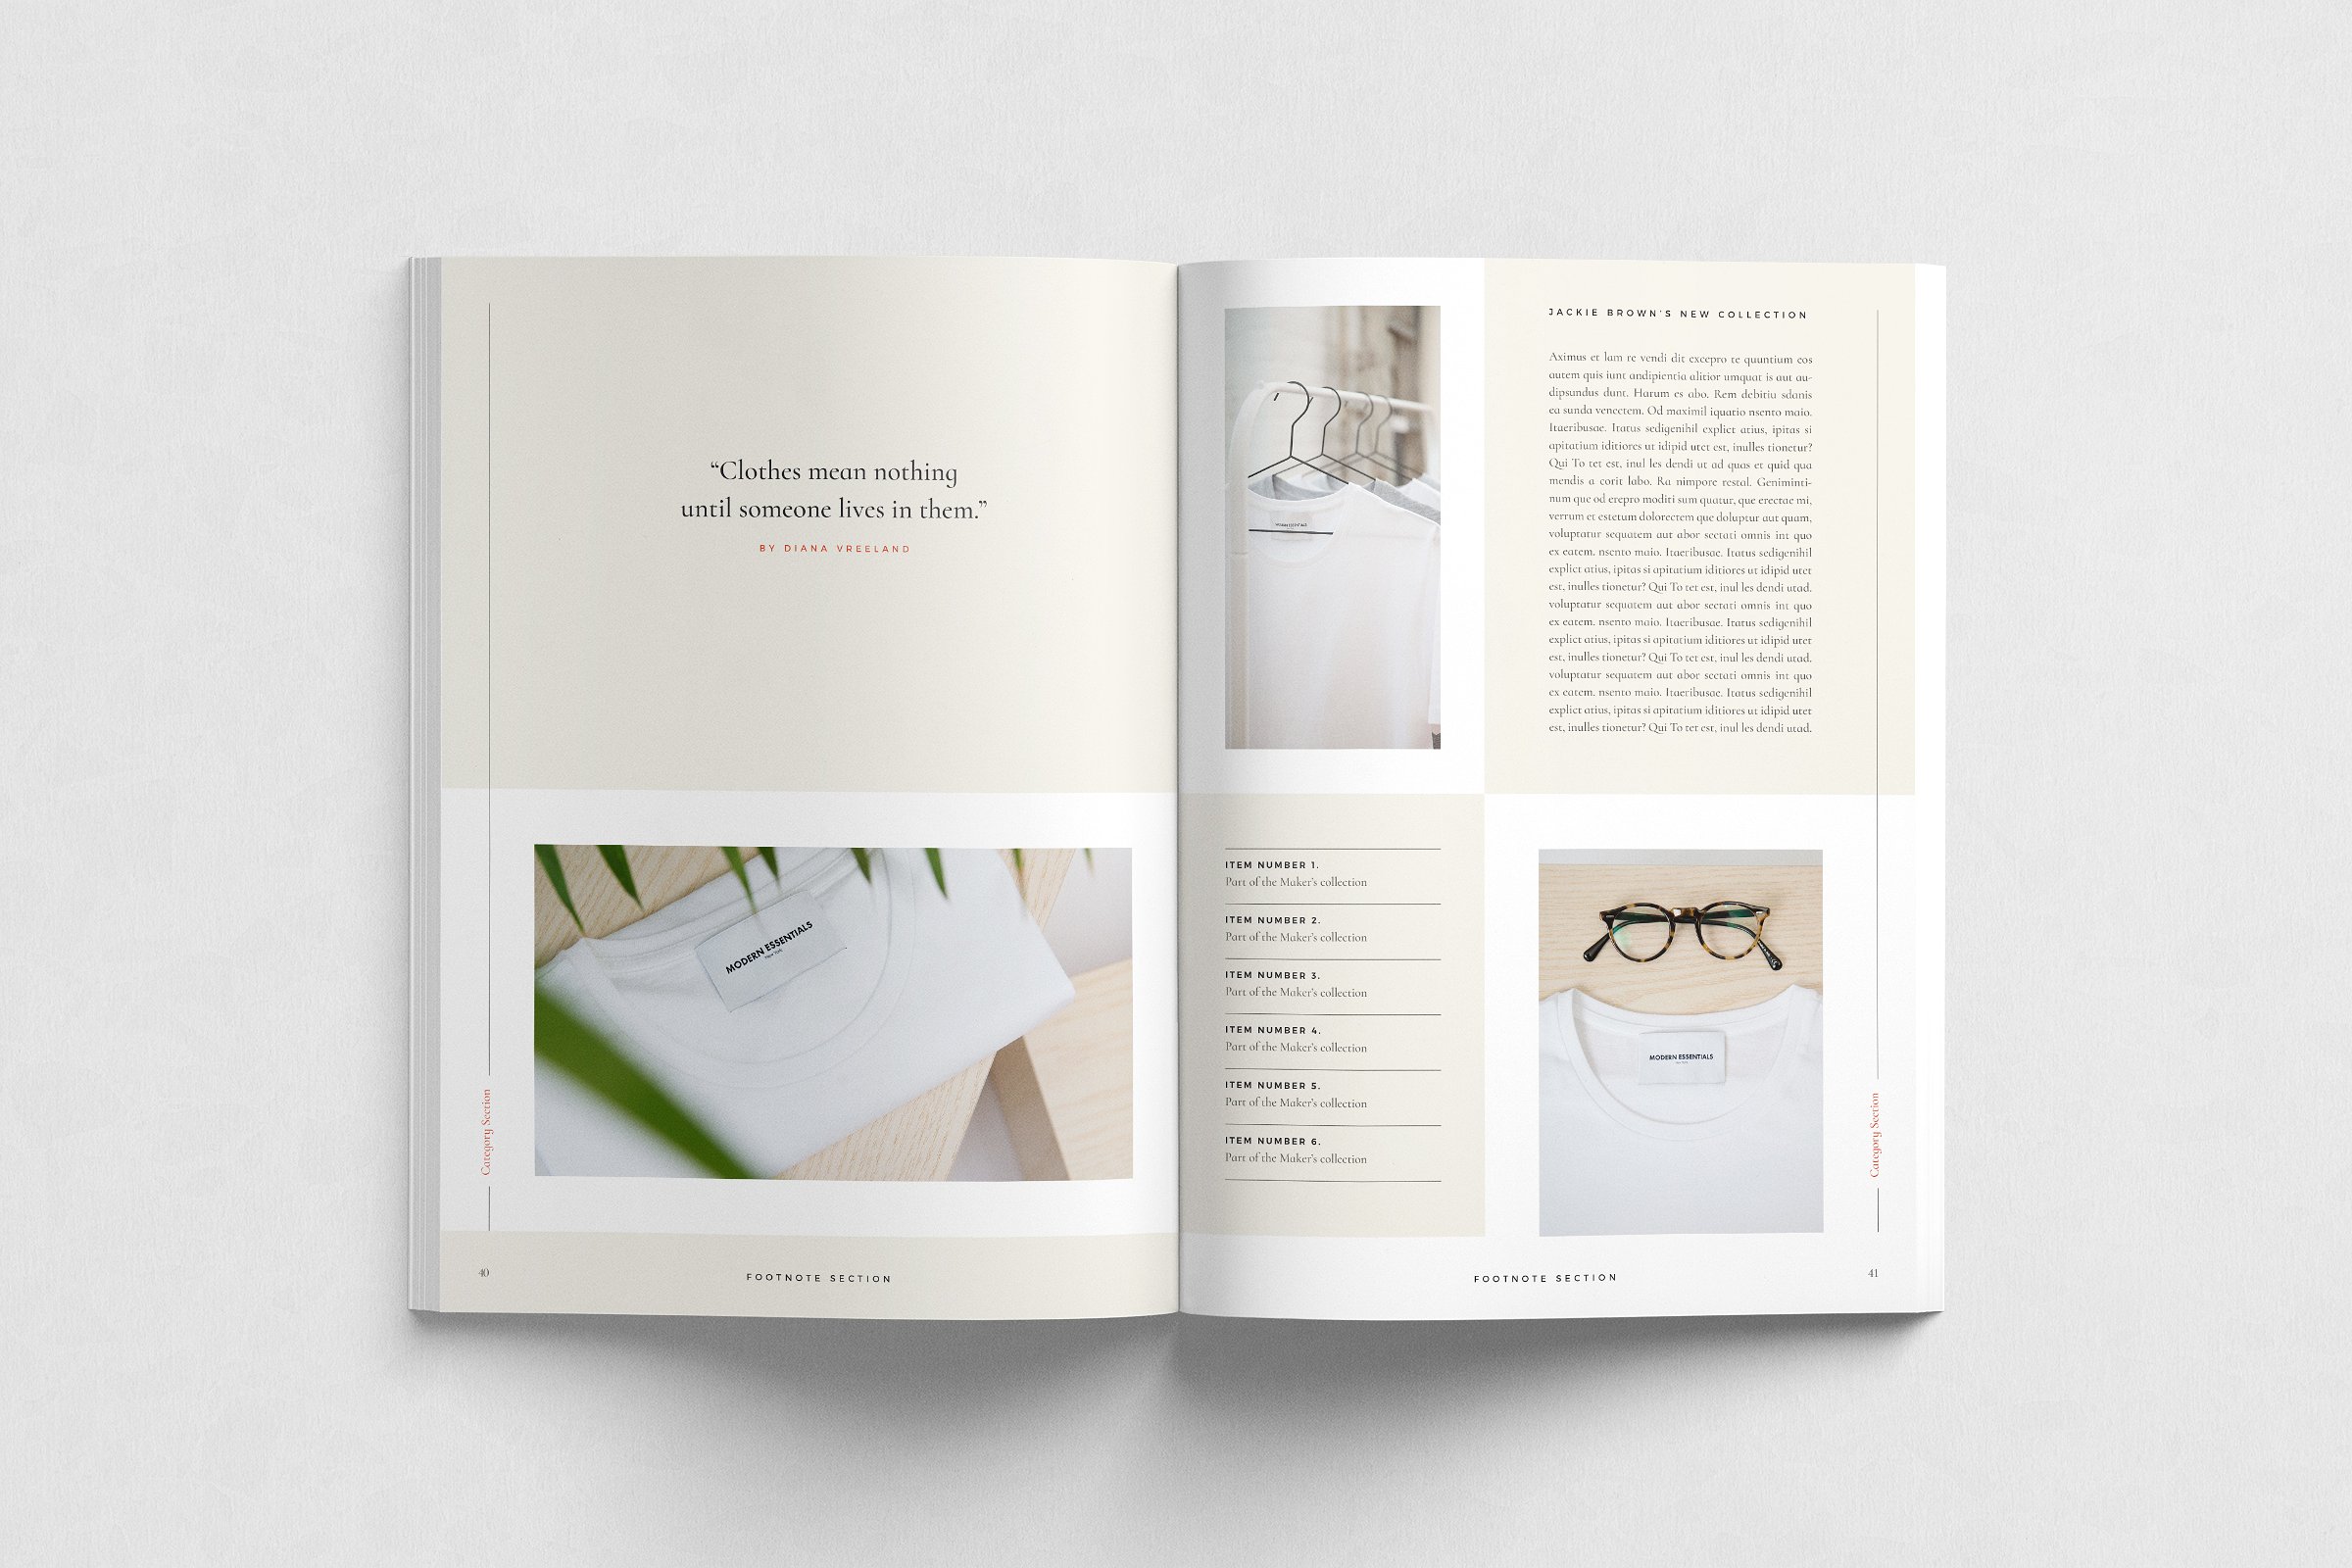 现代简约的服装品牌摄影宣传册模板 Modern Minimalist Clothing Brand Photography Brochure Template插图5